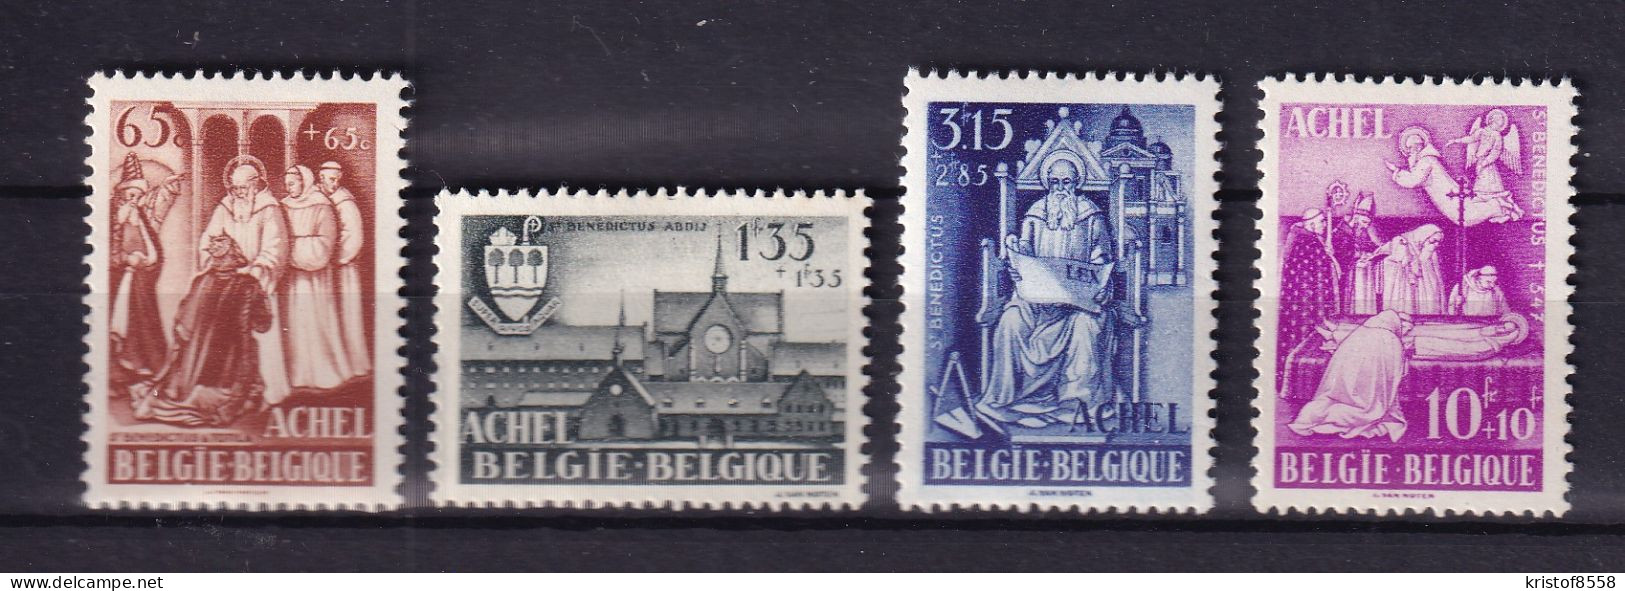 [2828] Zegels 773 - 776 * Scharnier - Unused Stamps